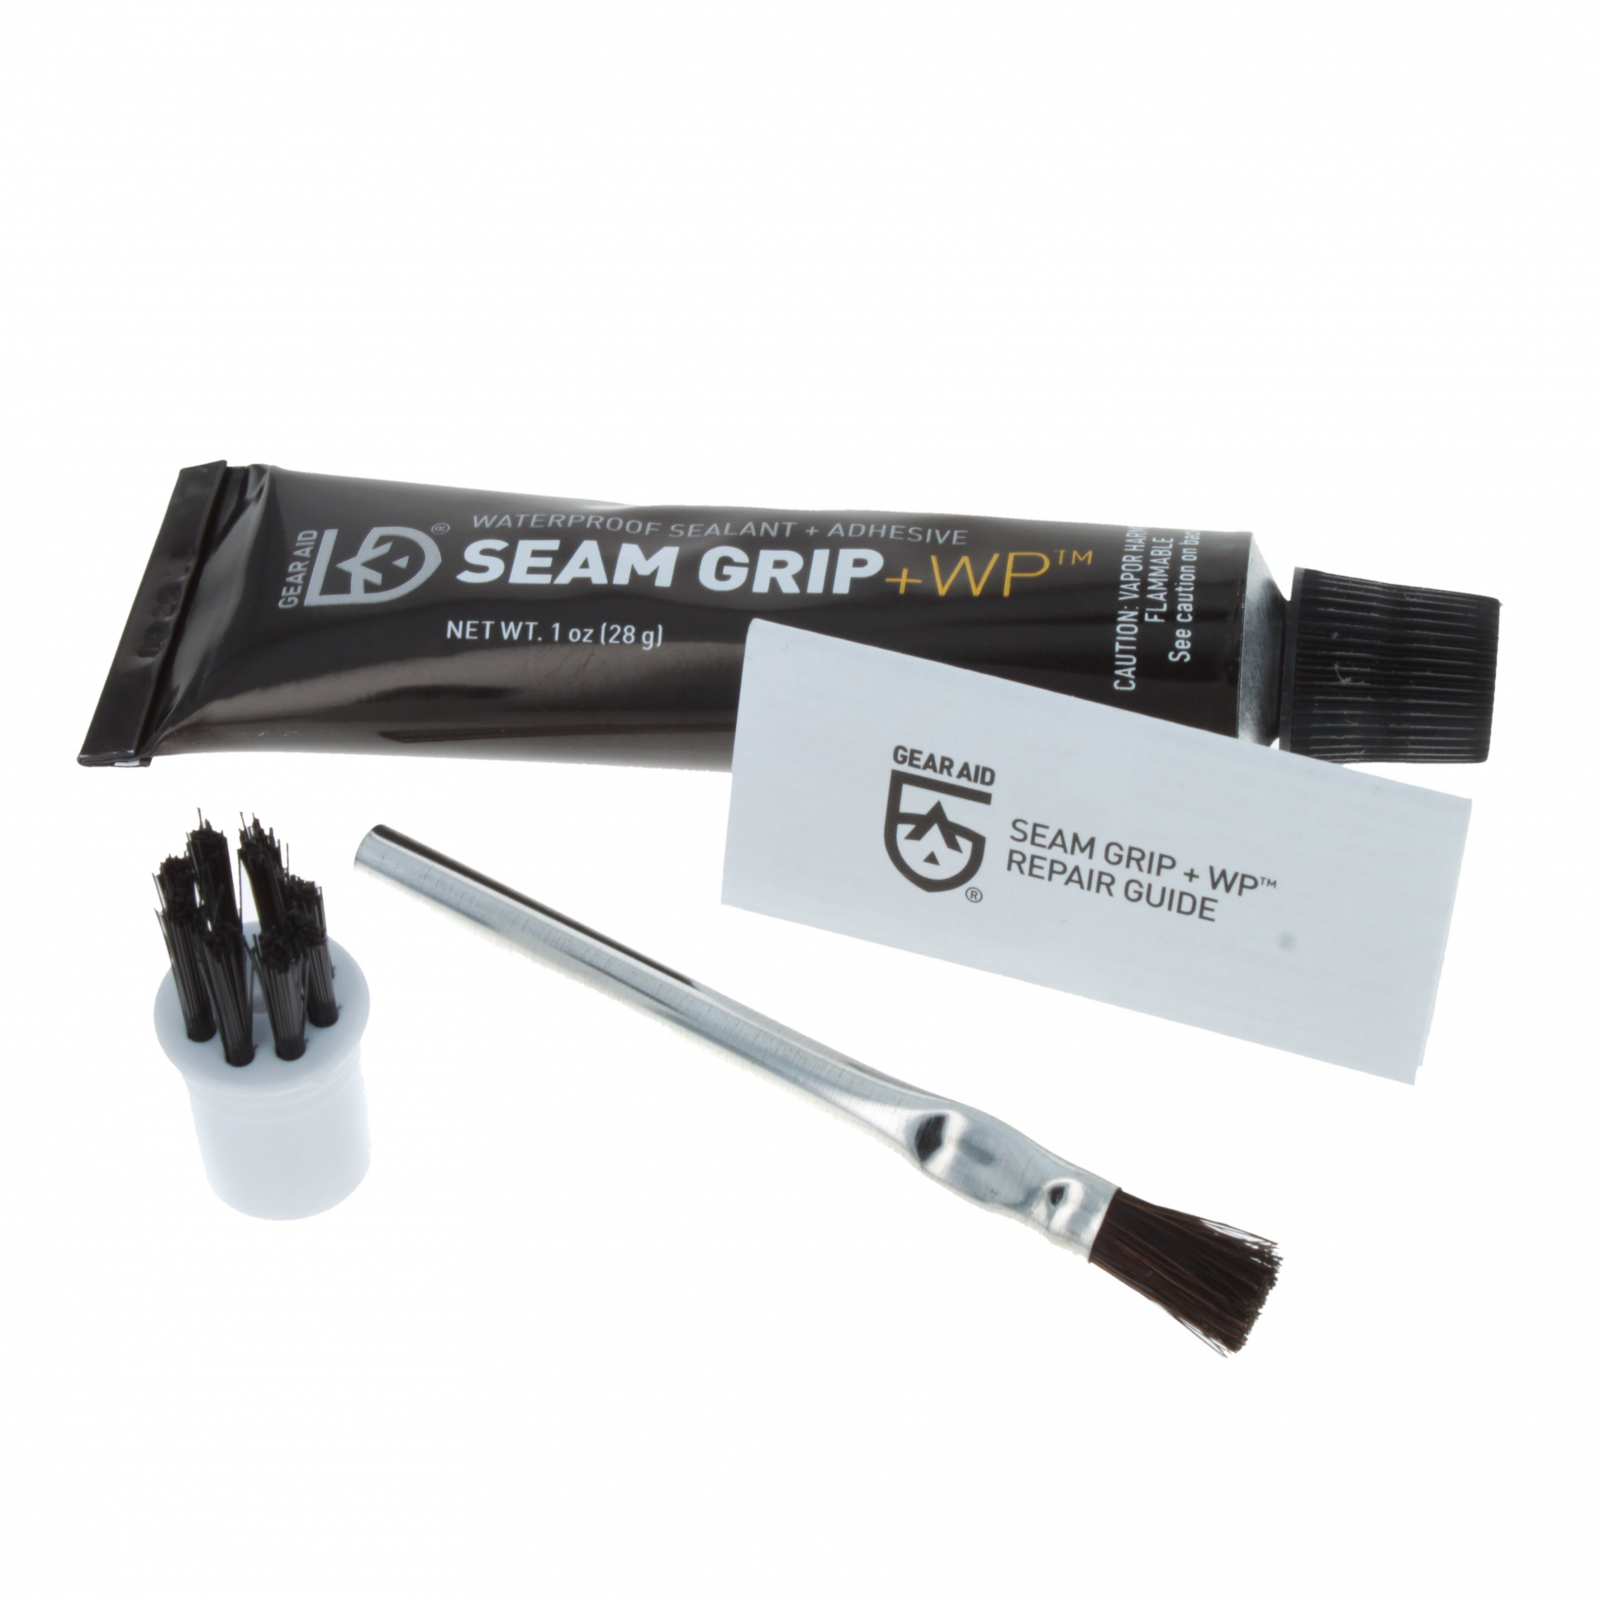 Gear Aid Seam Grip Repair Adhesive and Sealant 